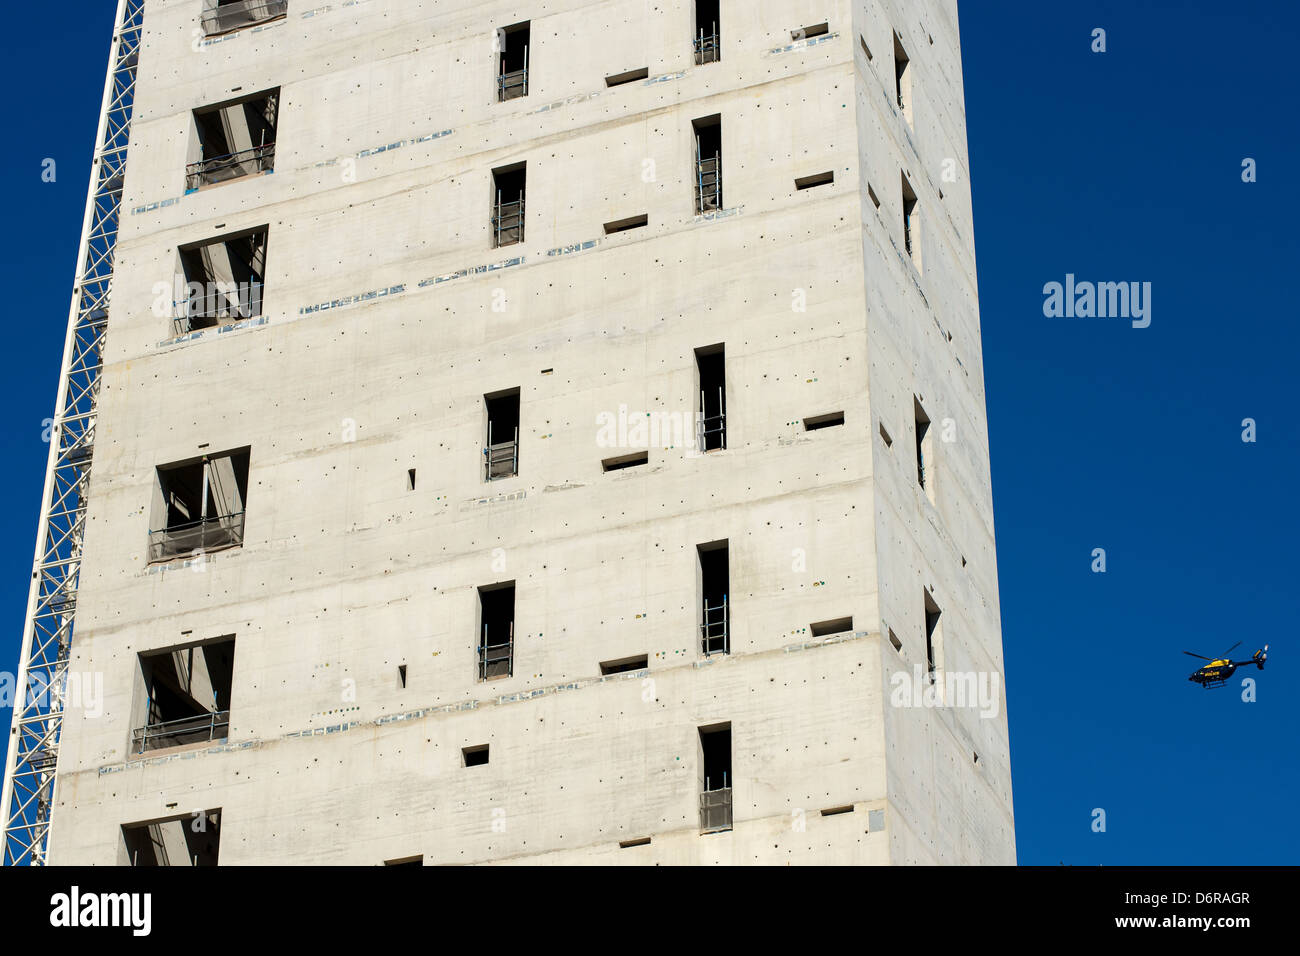 Ein Gebäude im Bau, mit Kran und Polizei-Hubschrauber fliegen in der Nähe umrahmt von einem klaren blauen Himmel Stockfoto